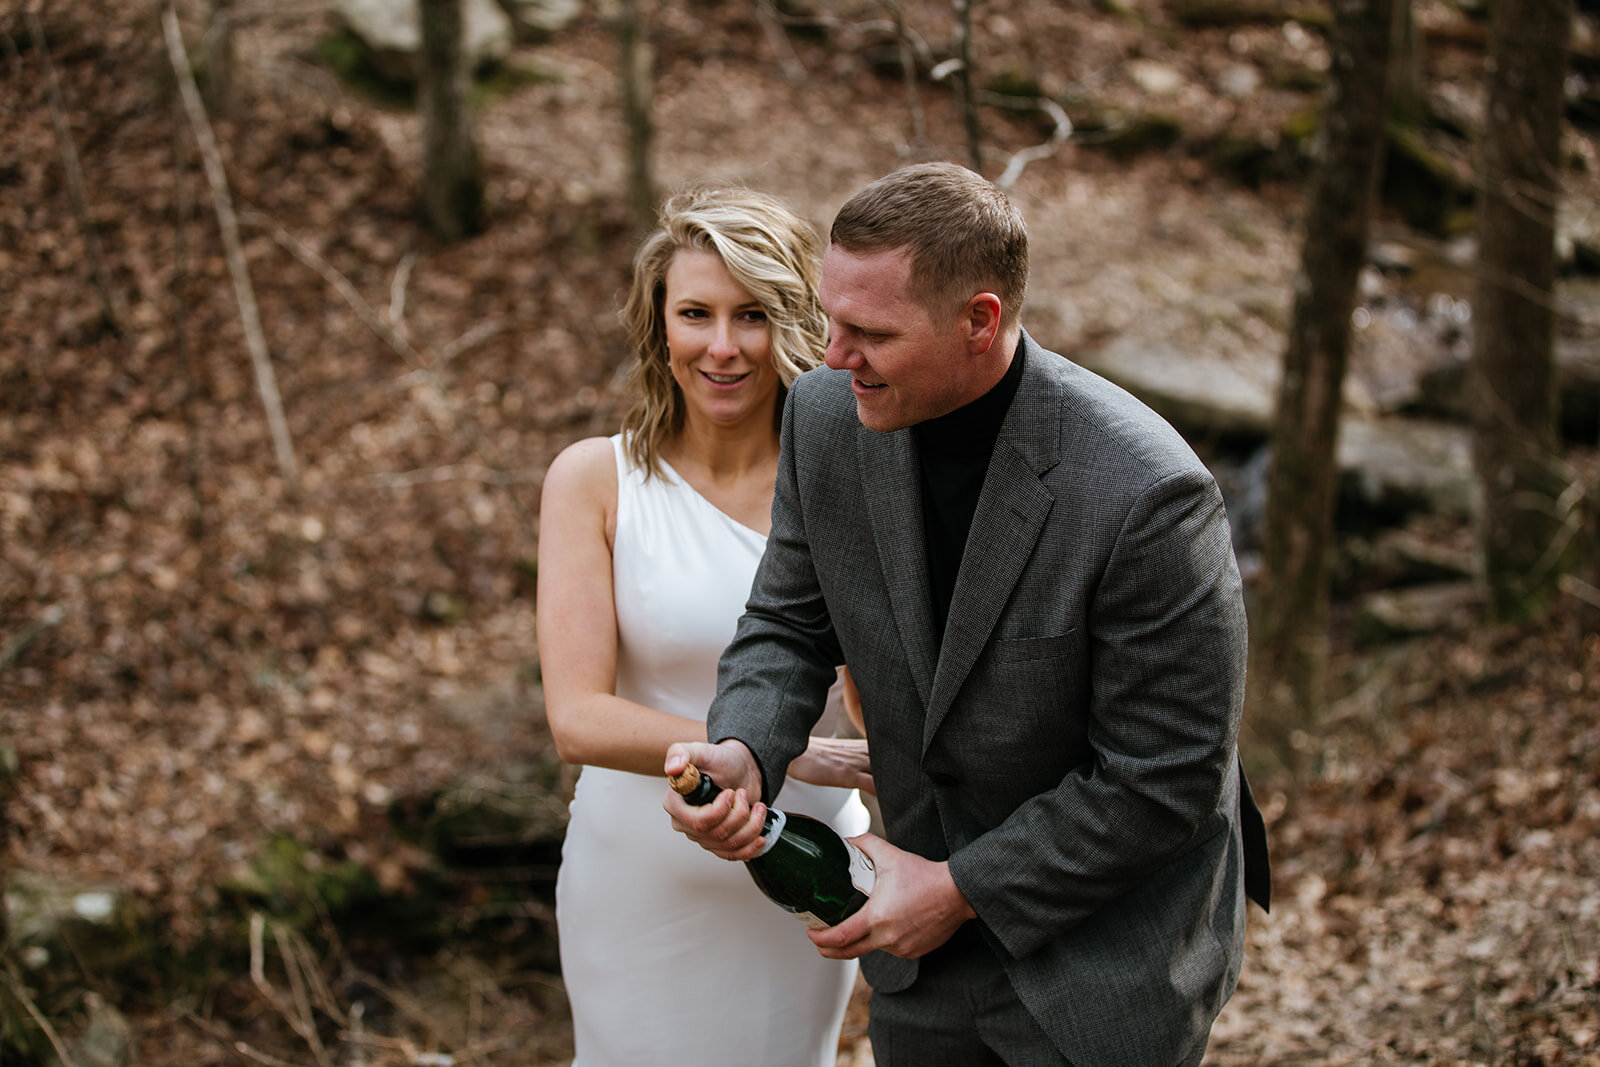 snoopers-rock-adventure-elopement-chattanooga-wedding-photographerfoster-falls-elopement-chattanooga-wedding-photographer-569_websize.jpg